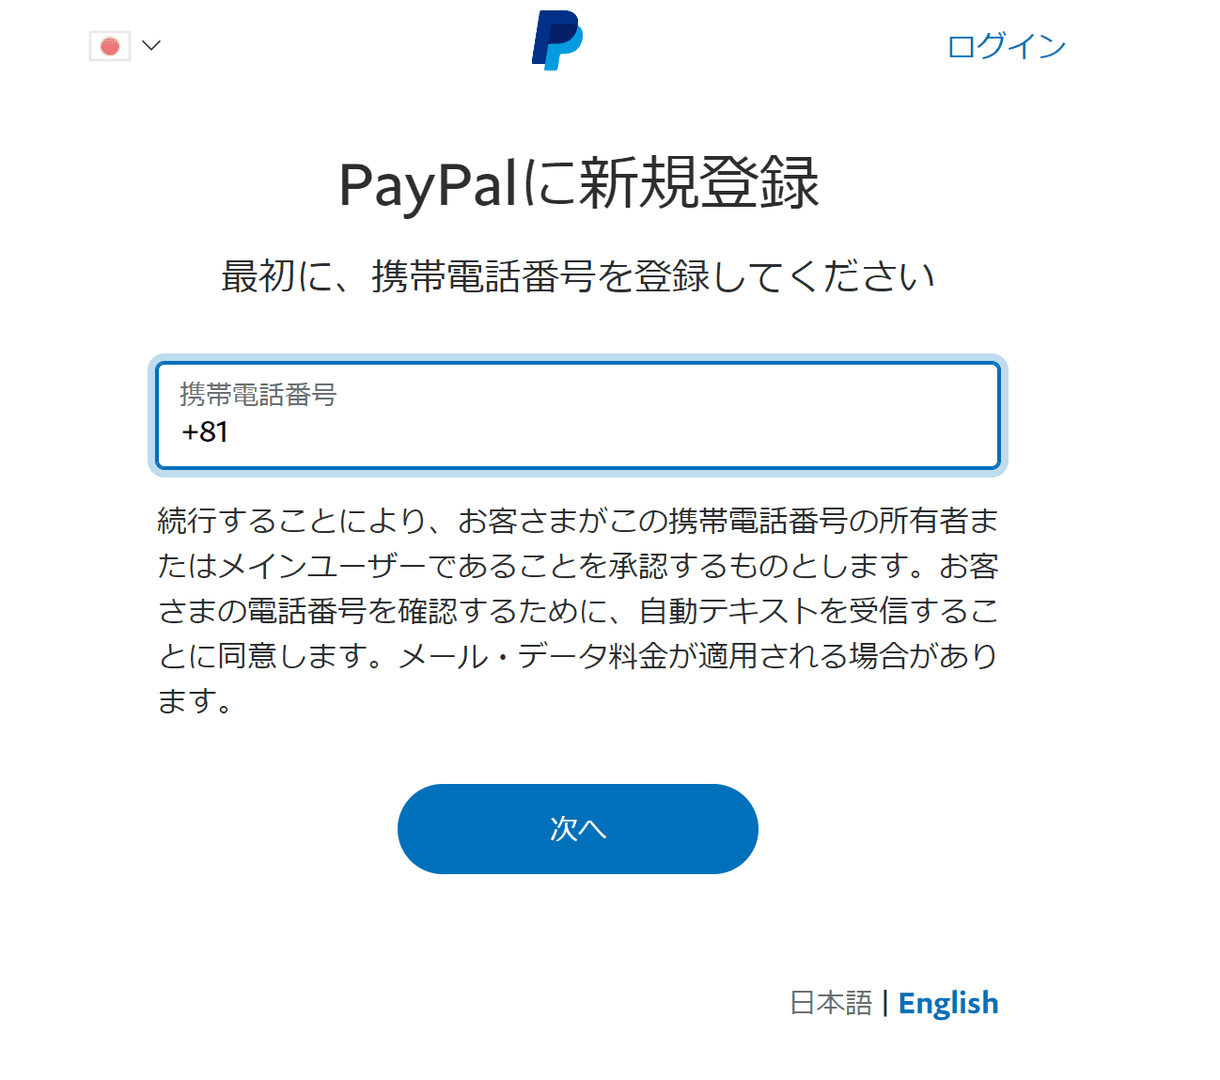 PayPalにVプリカを登録する方法｜クレジットカードが無くてもVプリカをPayPal登録すればネット通販・Webサービスを利用できる！｜PayPalにVプリカを登録する：PayPal新規登録を行うために携帯電話番号の登録を求められるので、携帯電話番号を入力して「次へ」をクリックします。